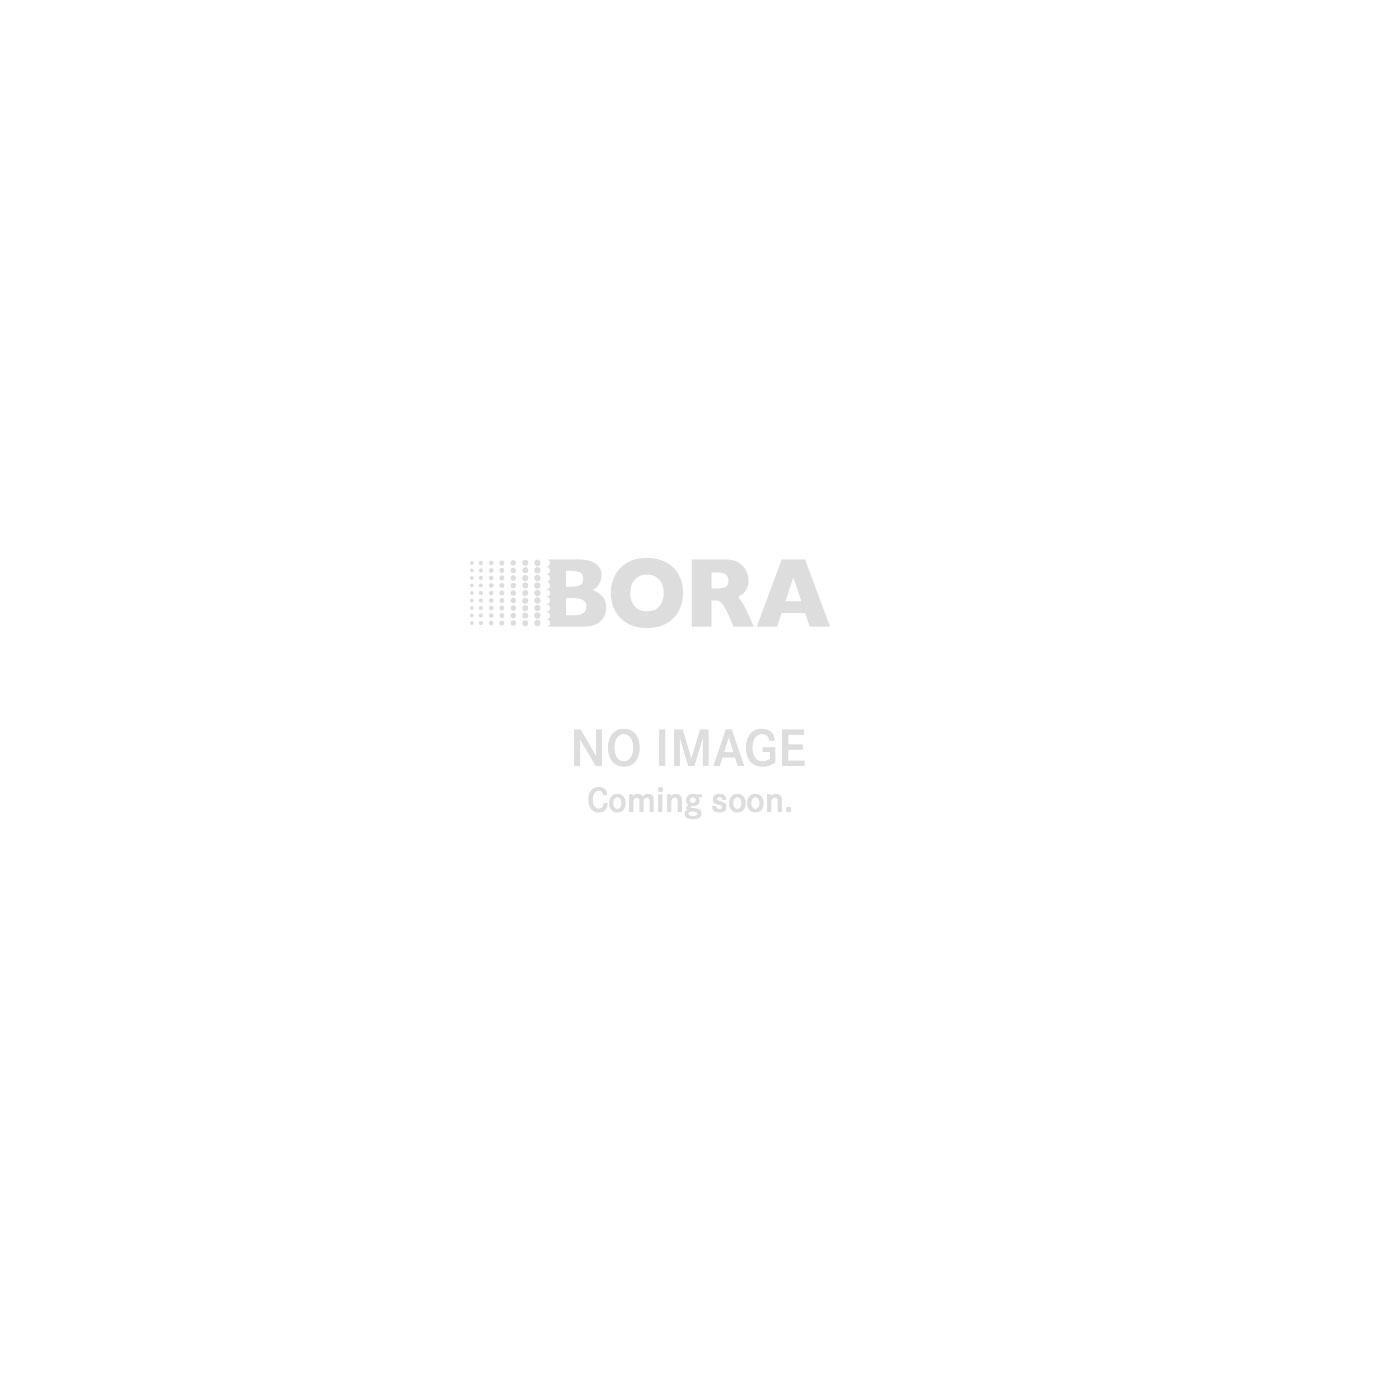 Eurocucina 2014 - BORA überzeugt mit Produkt-Neuigkeiten